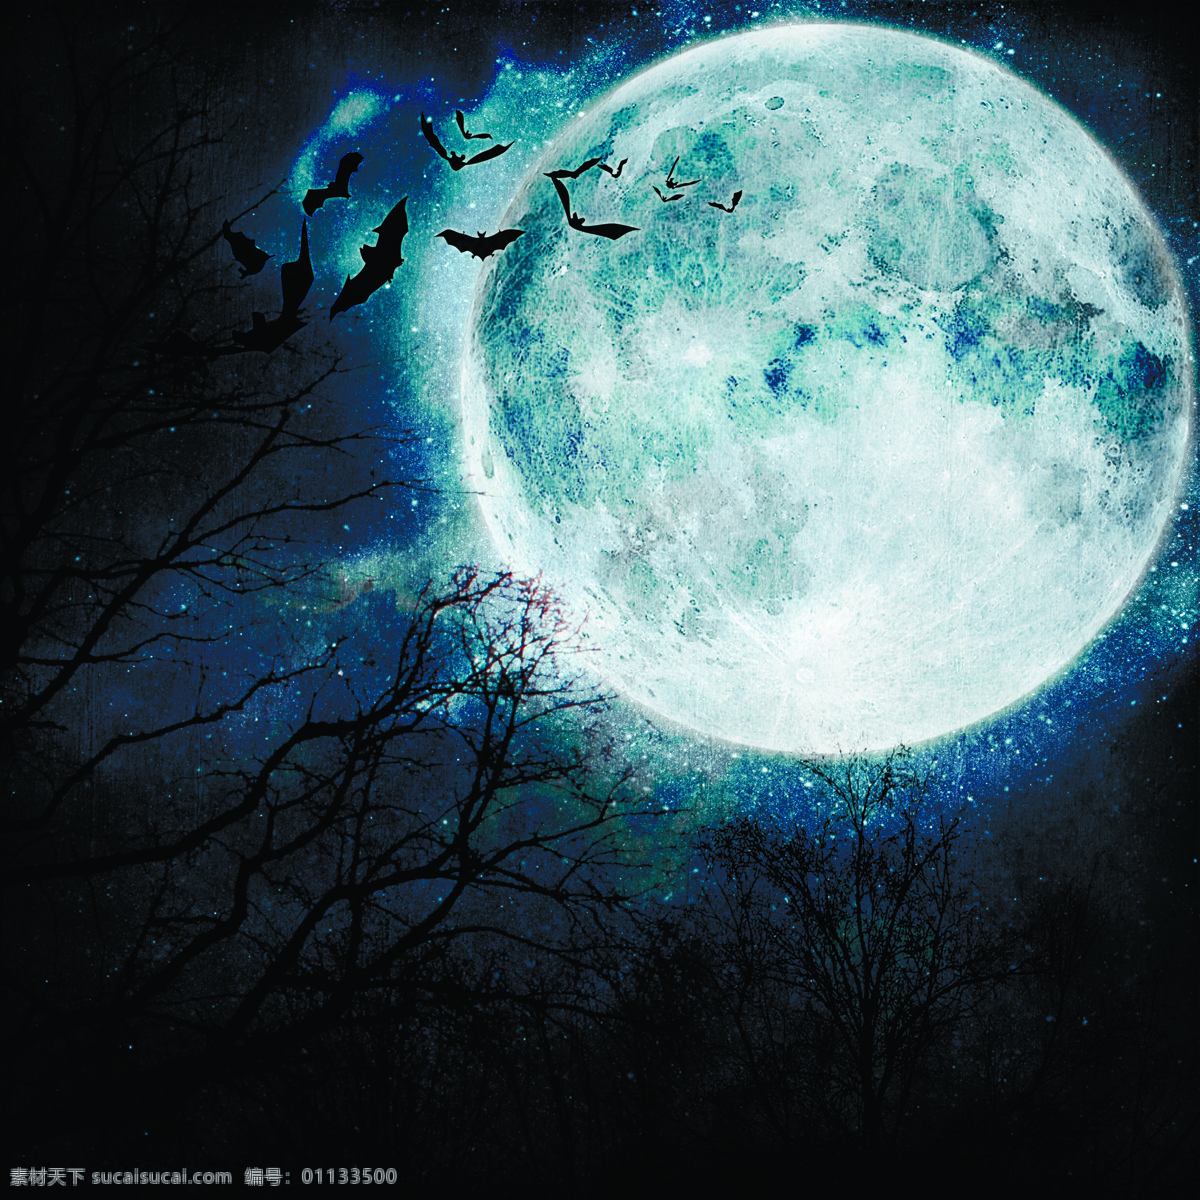 圆月 下 蝙蝠 树木 万圣节 节日素材 节日庆典 生活百科